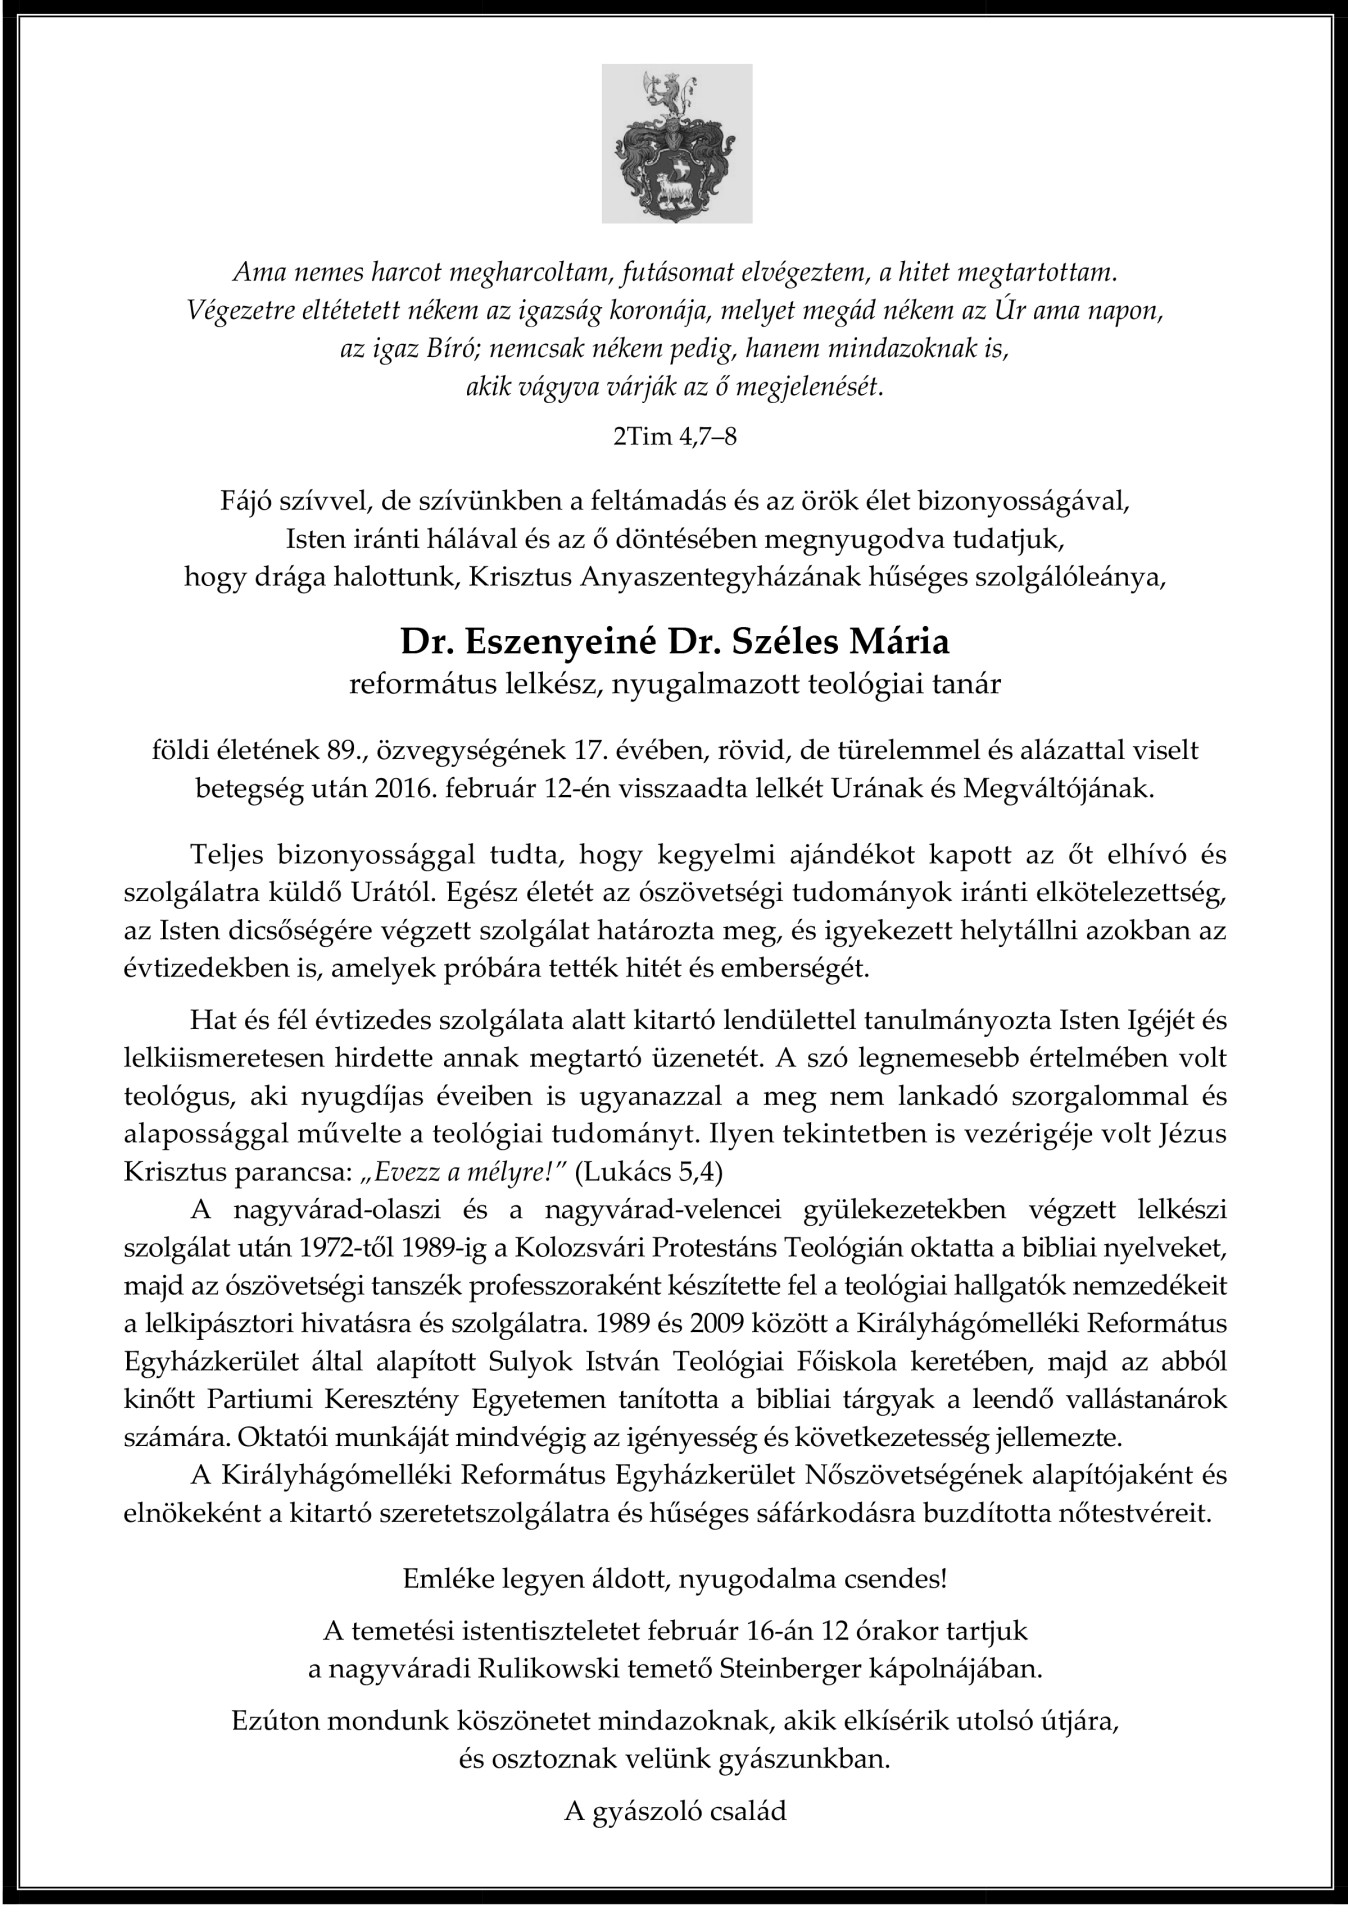 Gyászjelentés - Dr. Eszenyeiné Dr. Széles Mária 